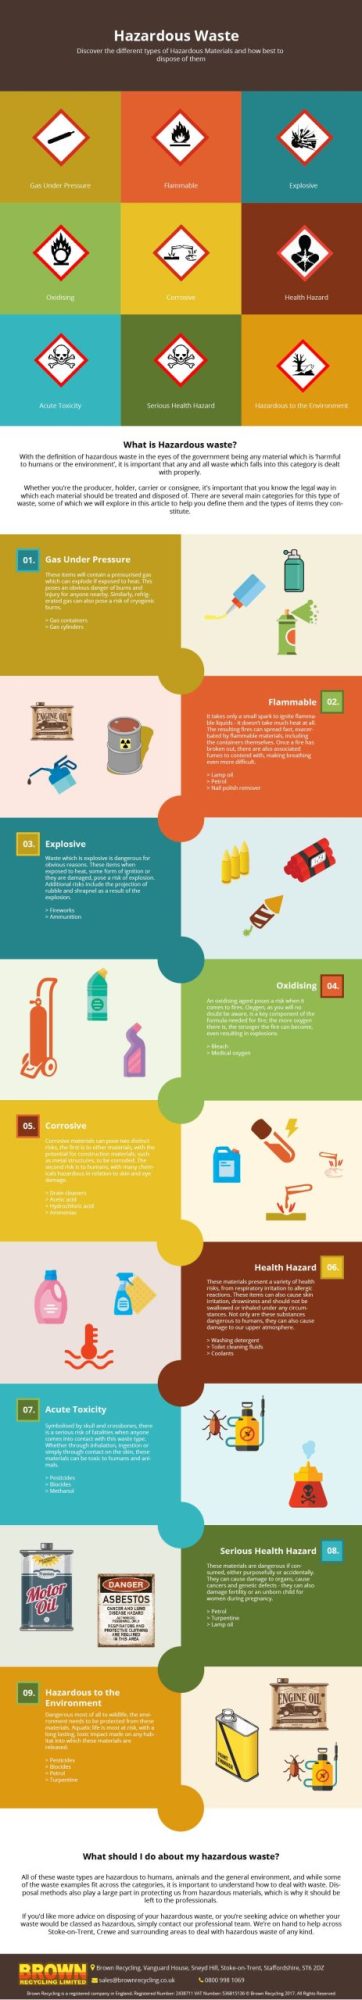 Types of Hazardous Waste